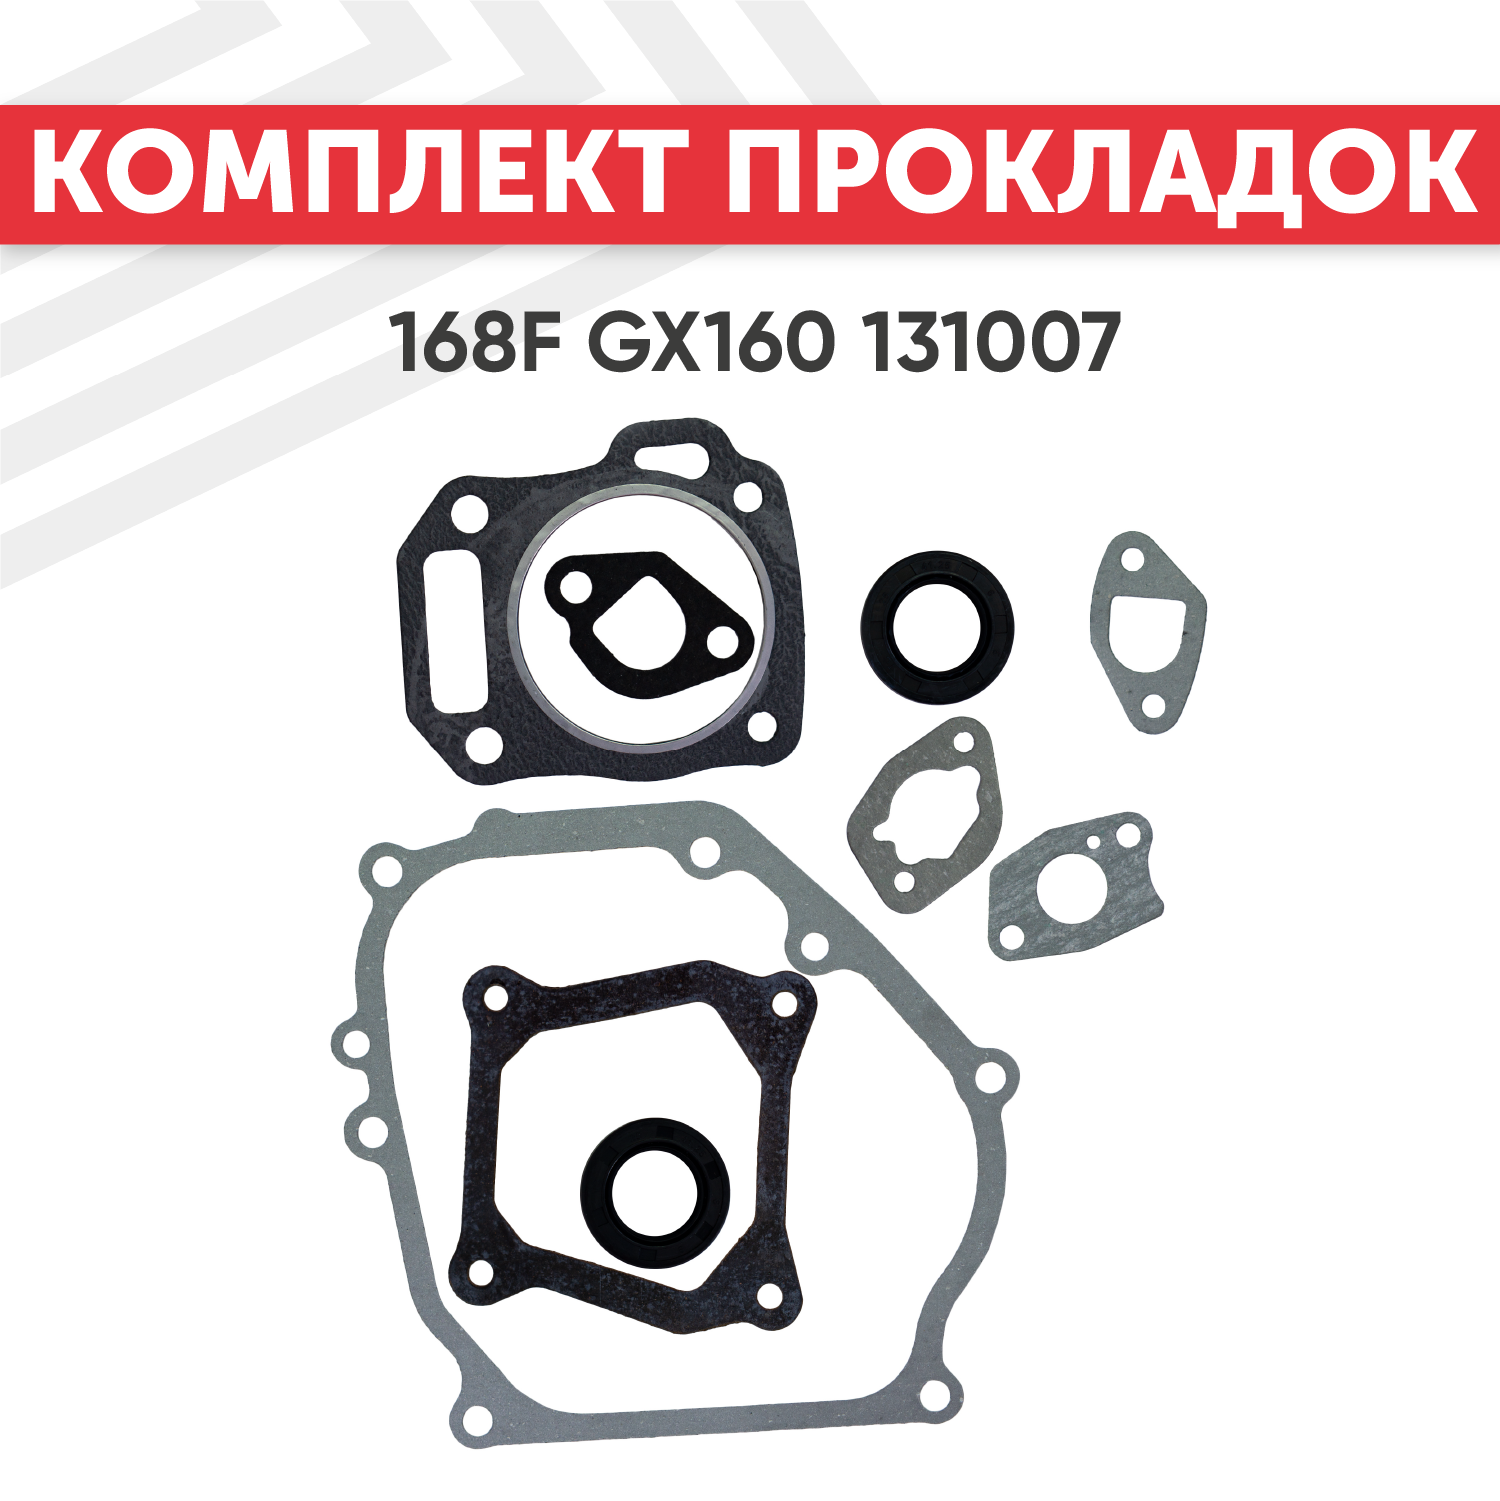 Комплект прокладок для двигателя Honda 168F, GX160, GX200, 131007